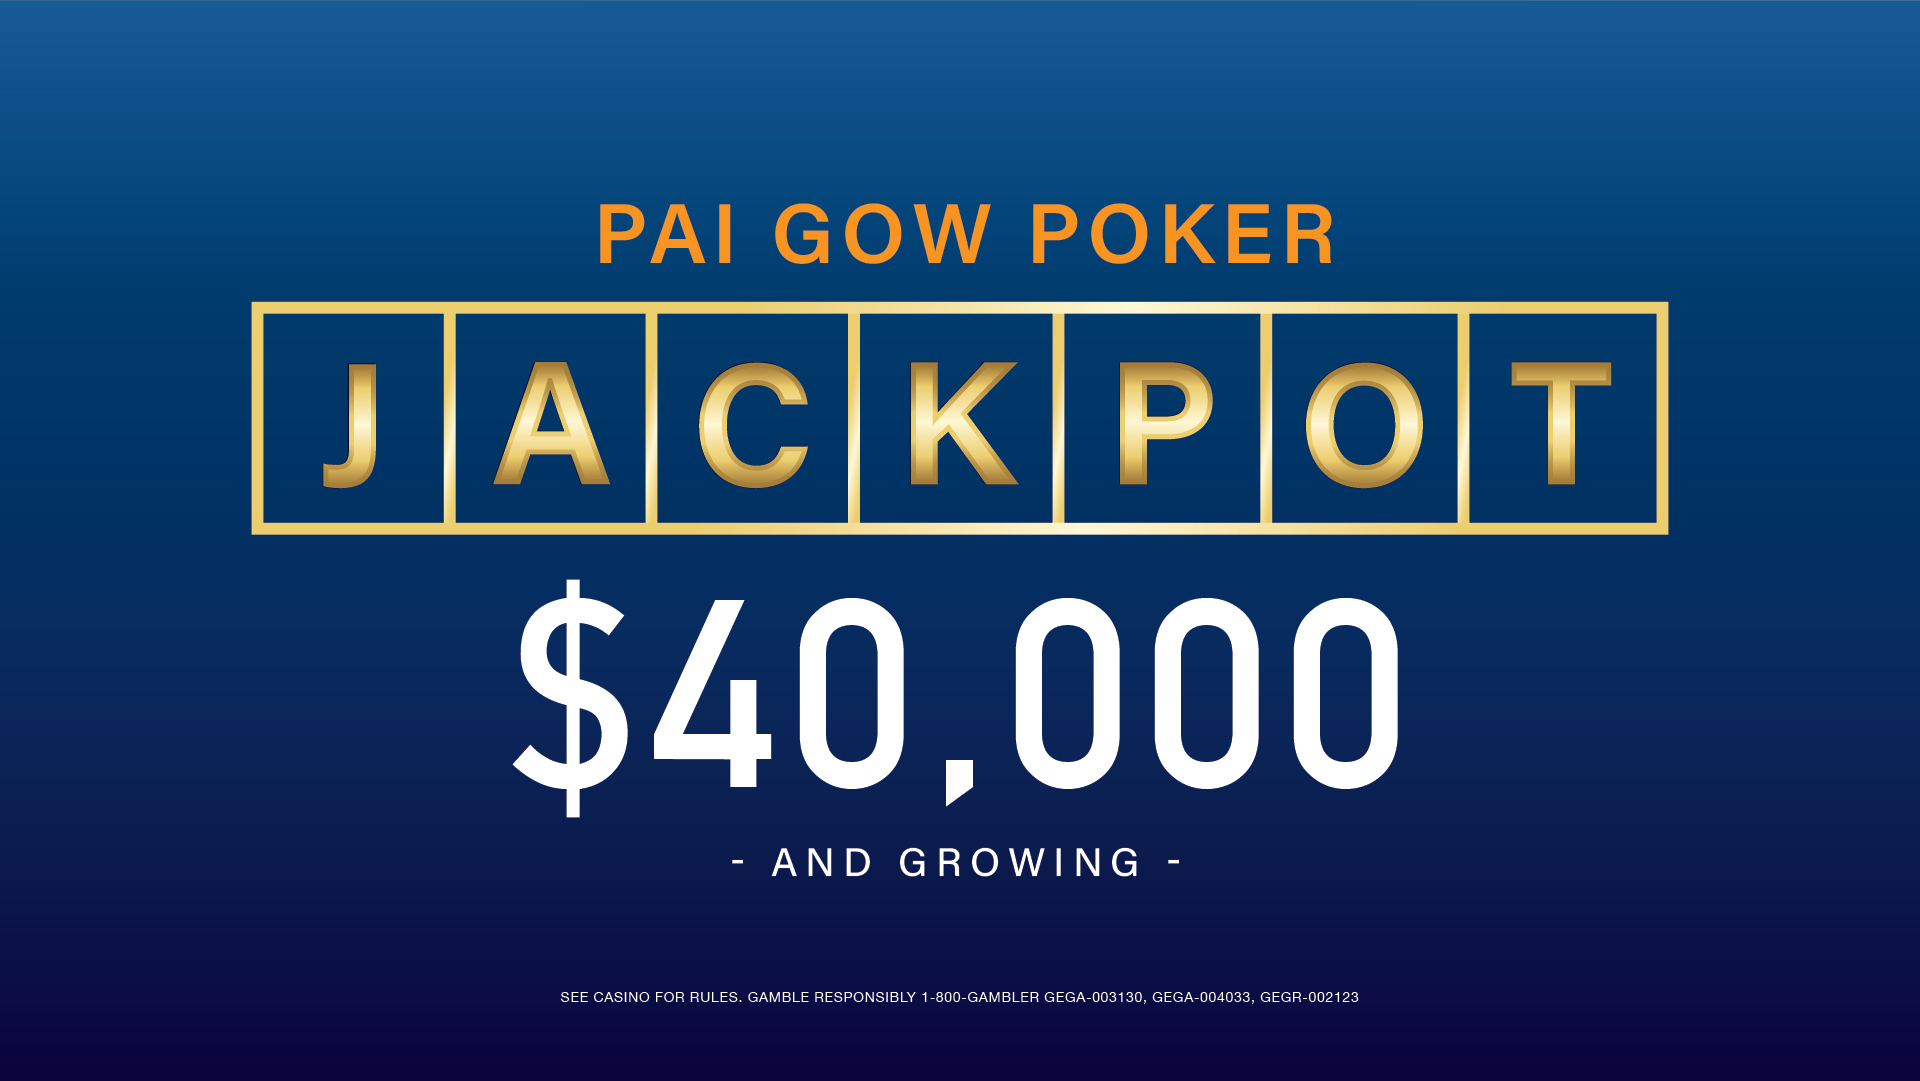 (English) Pai Gow Poker Jackpot